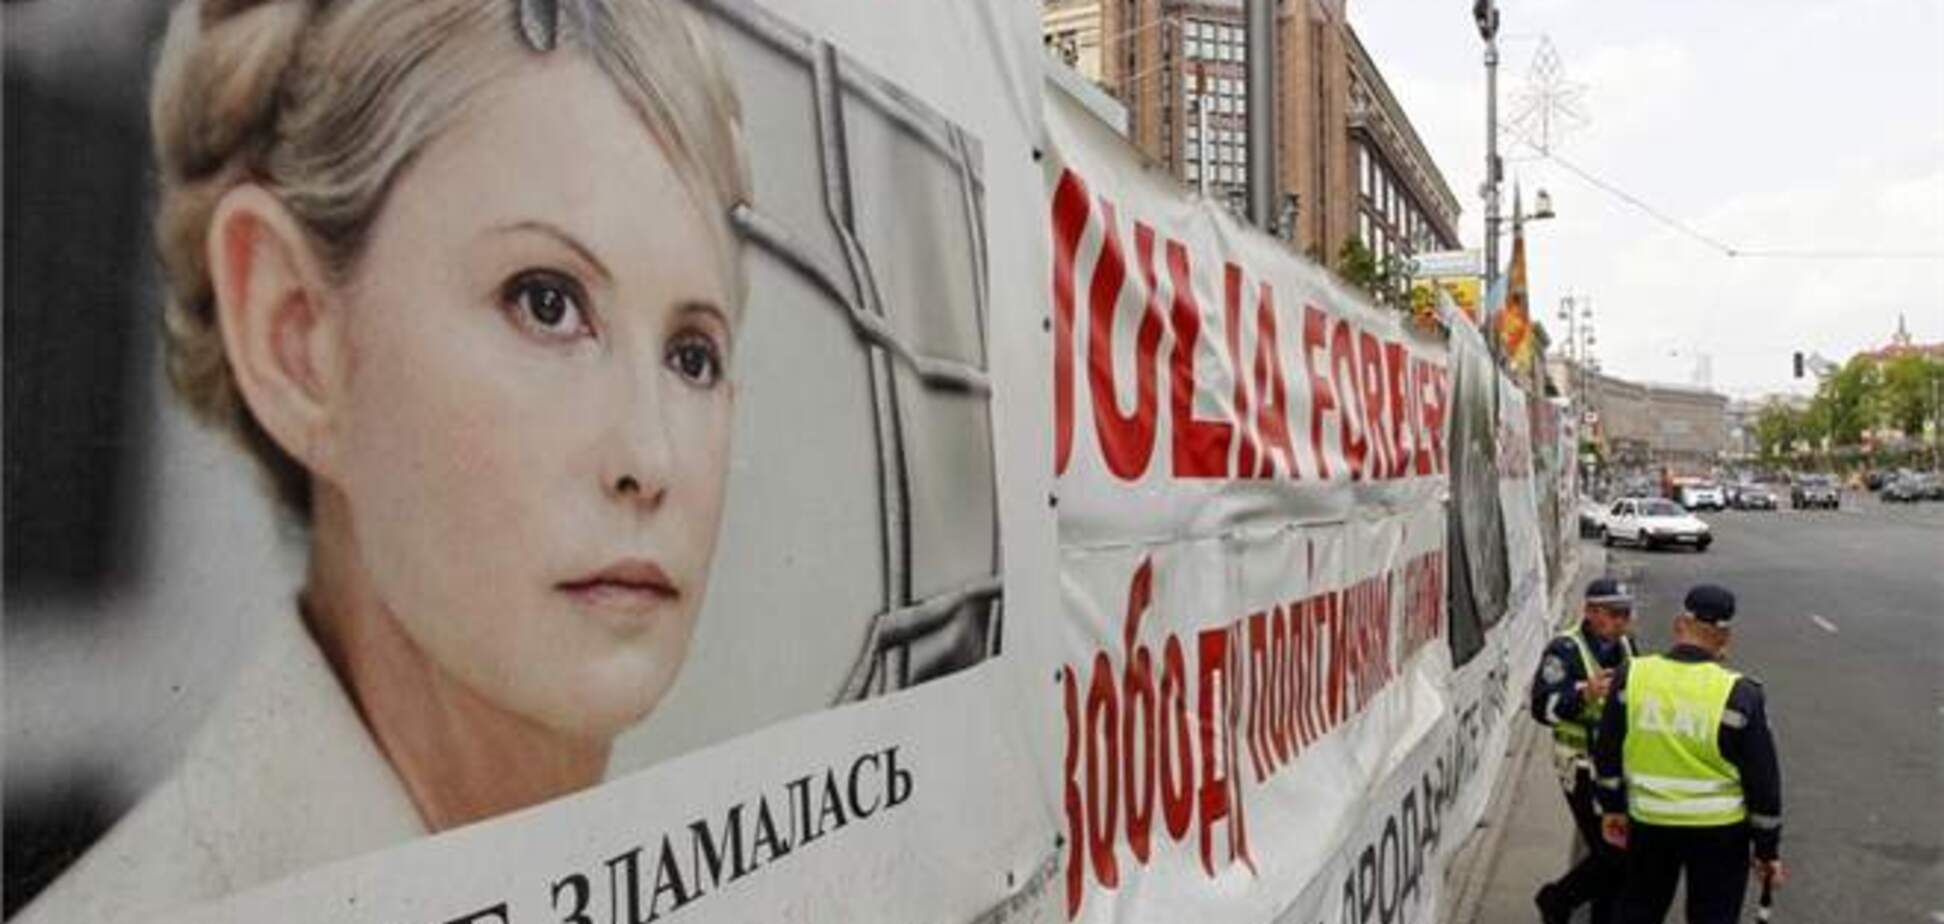 Всемирный конгресс украинцев призвал немедленно освободить Тимошенко